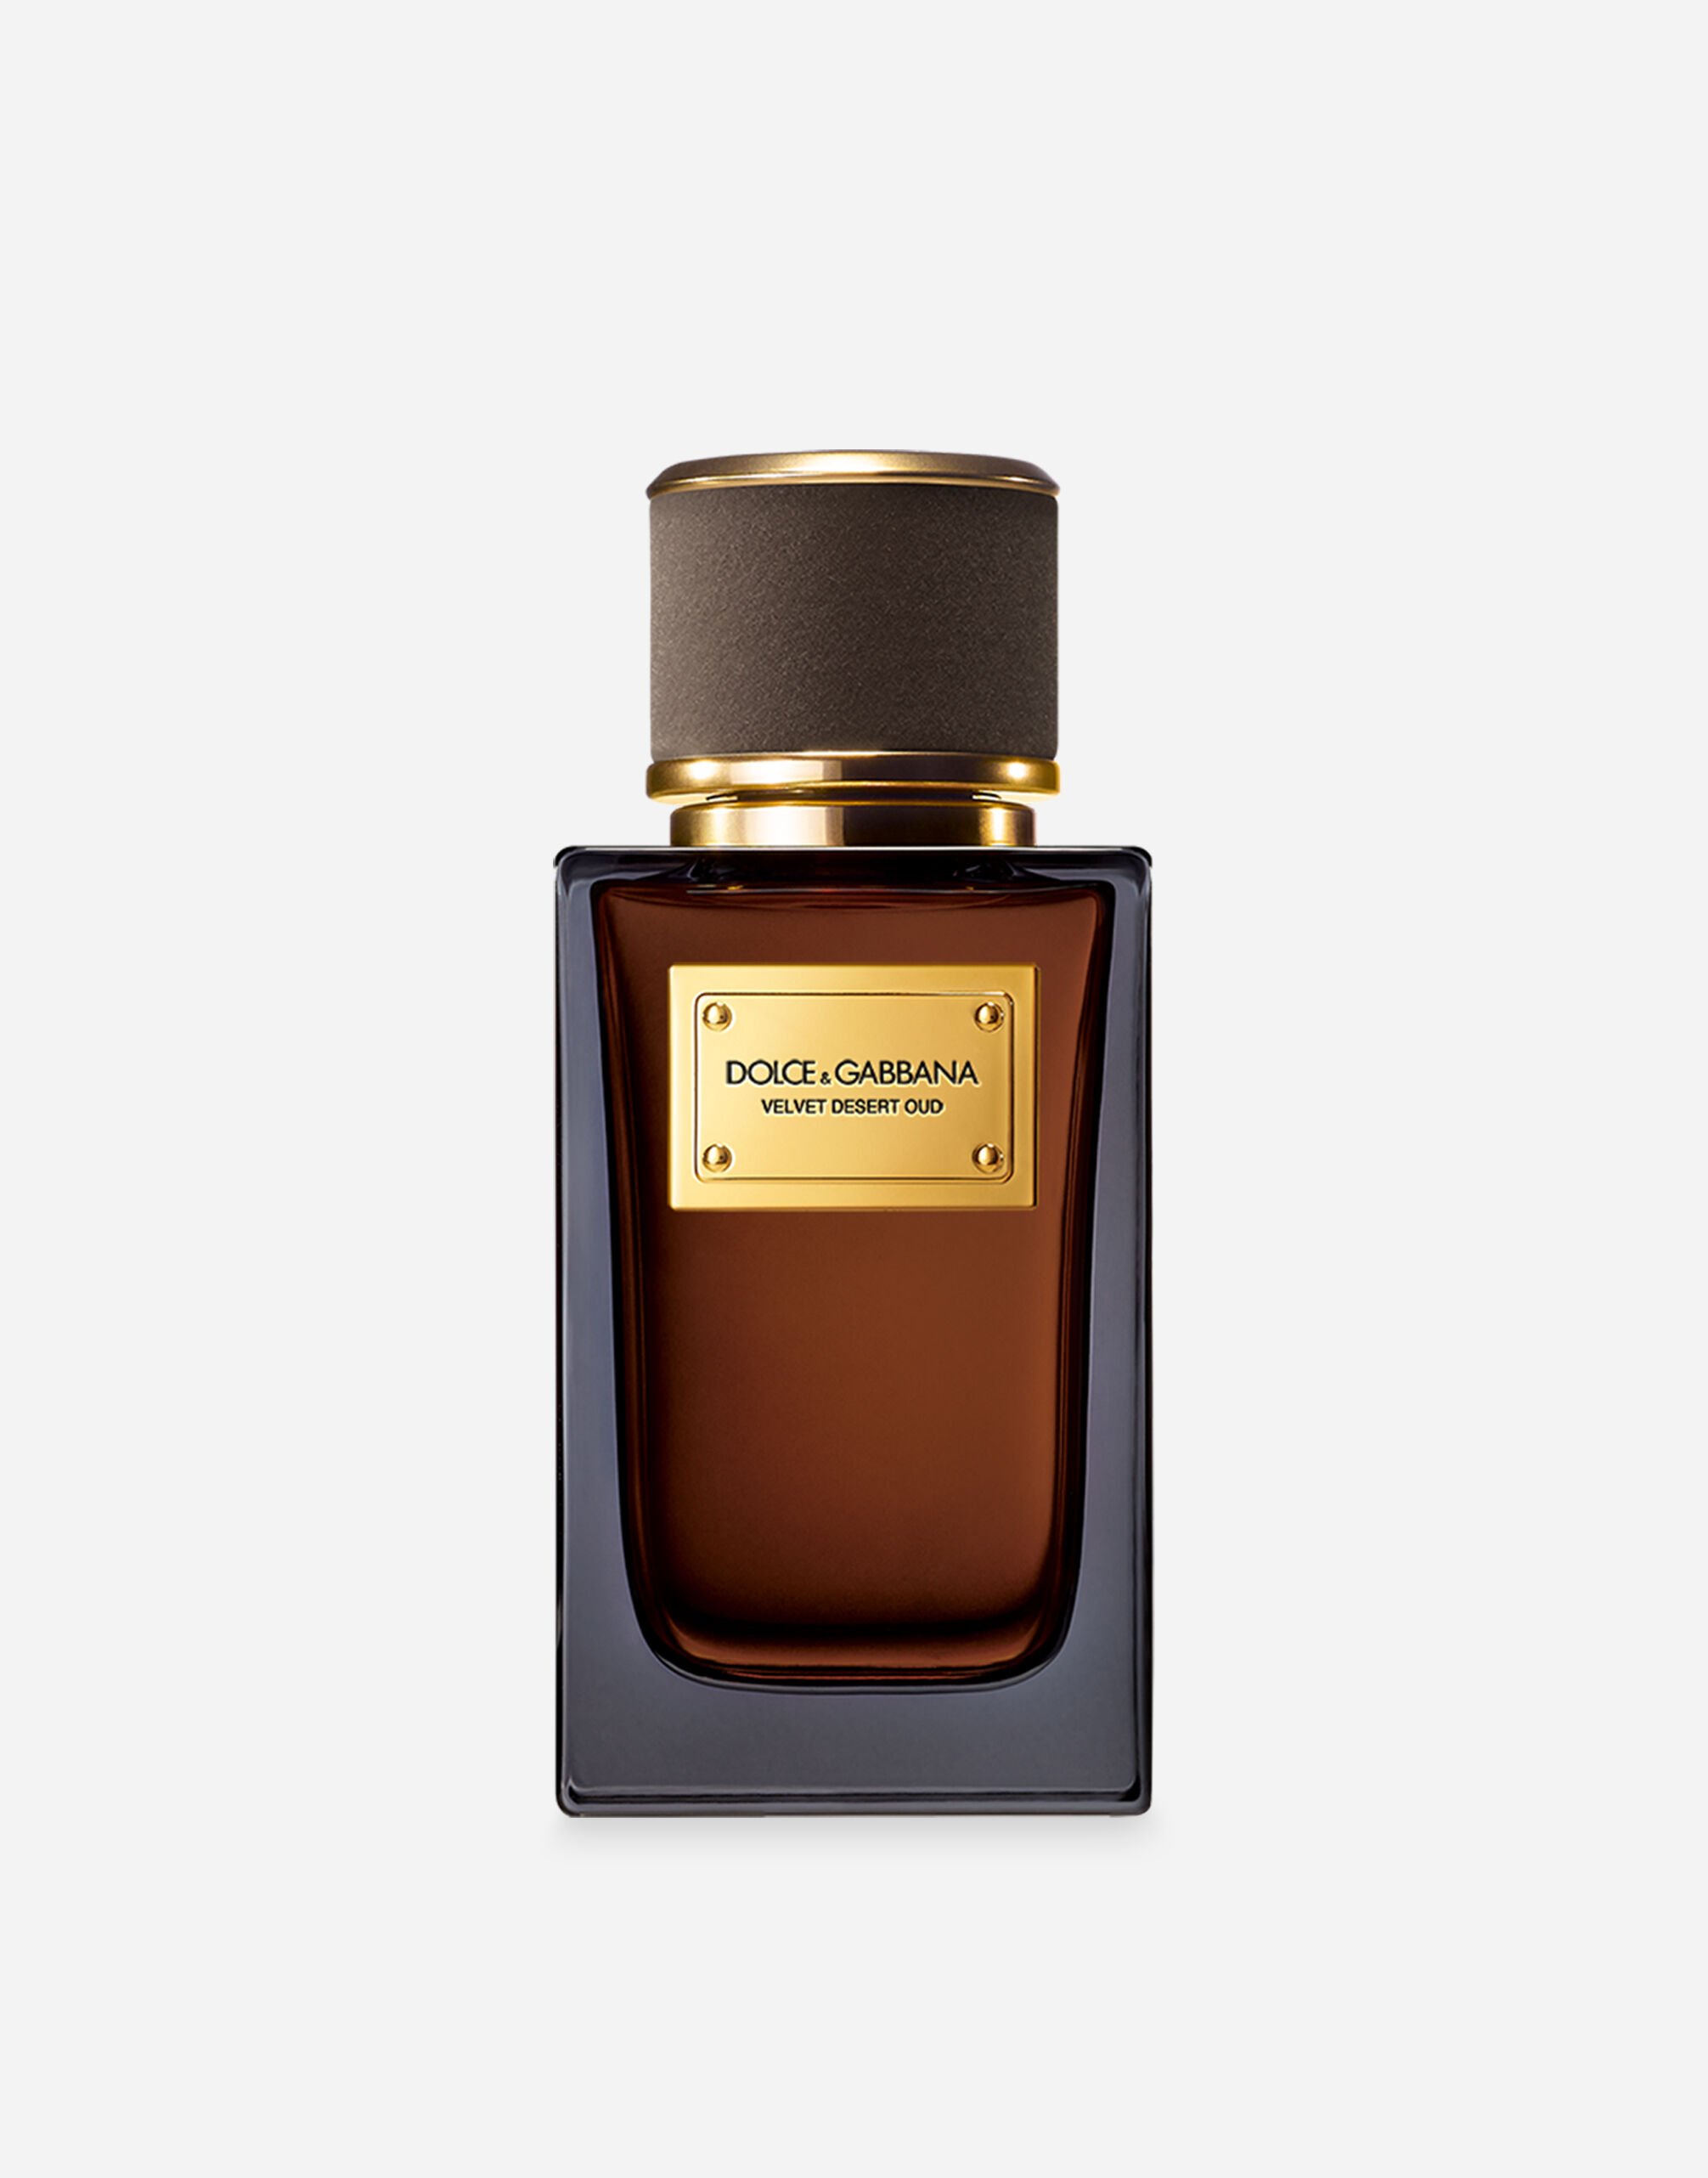 Dolce & Gabbana Velvet Desert Oud Eau de Parfum - VT00KBVT000